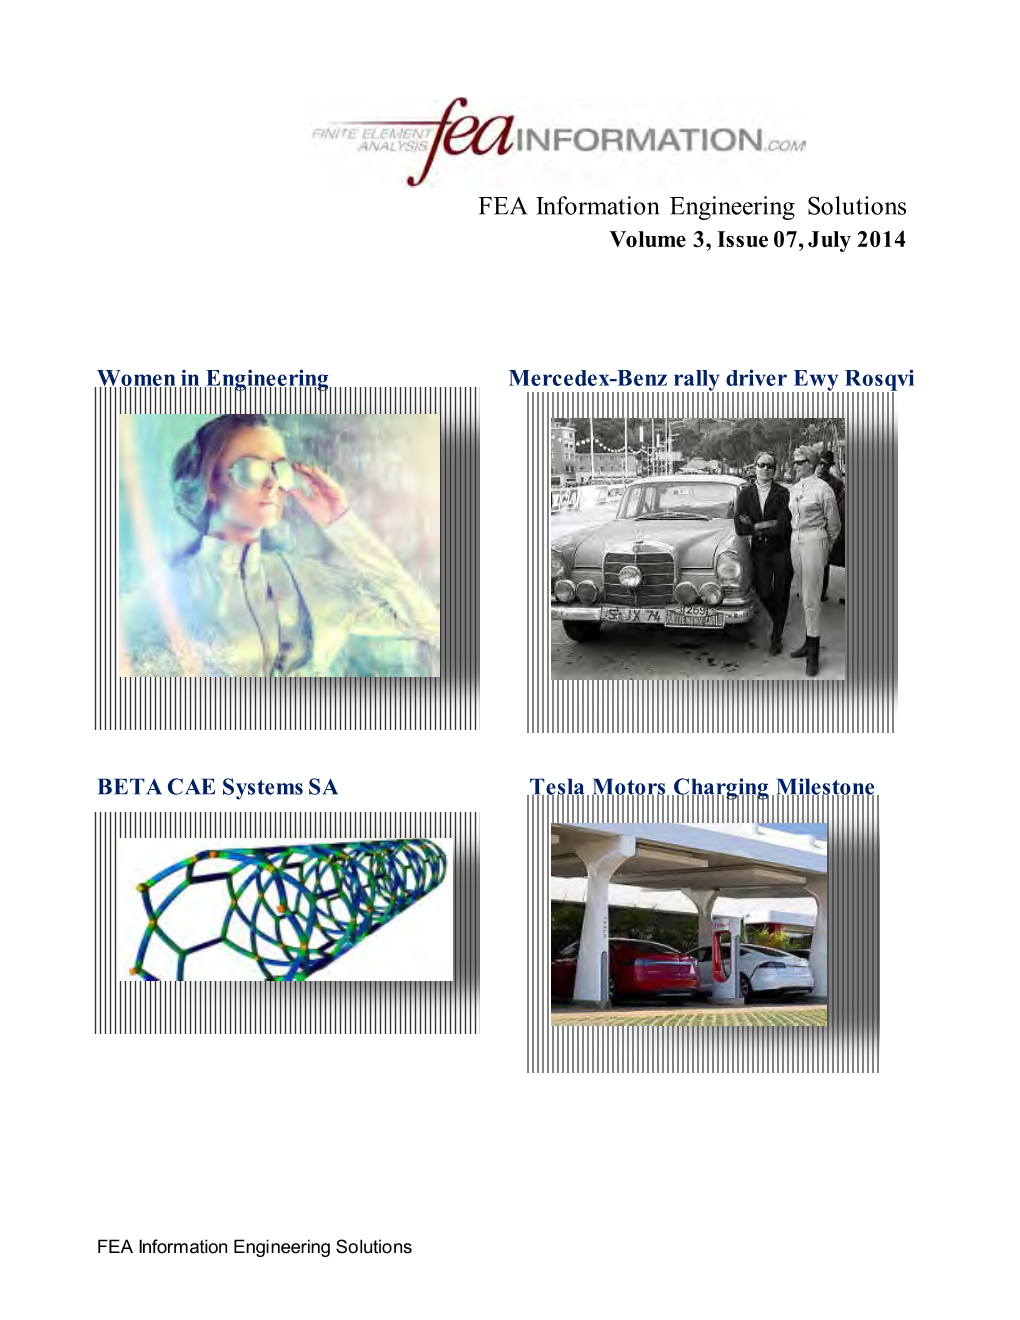 FEA Newsletter July 2014